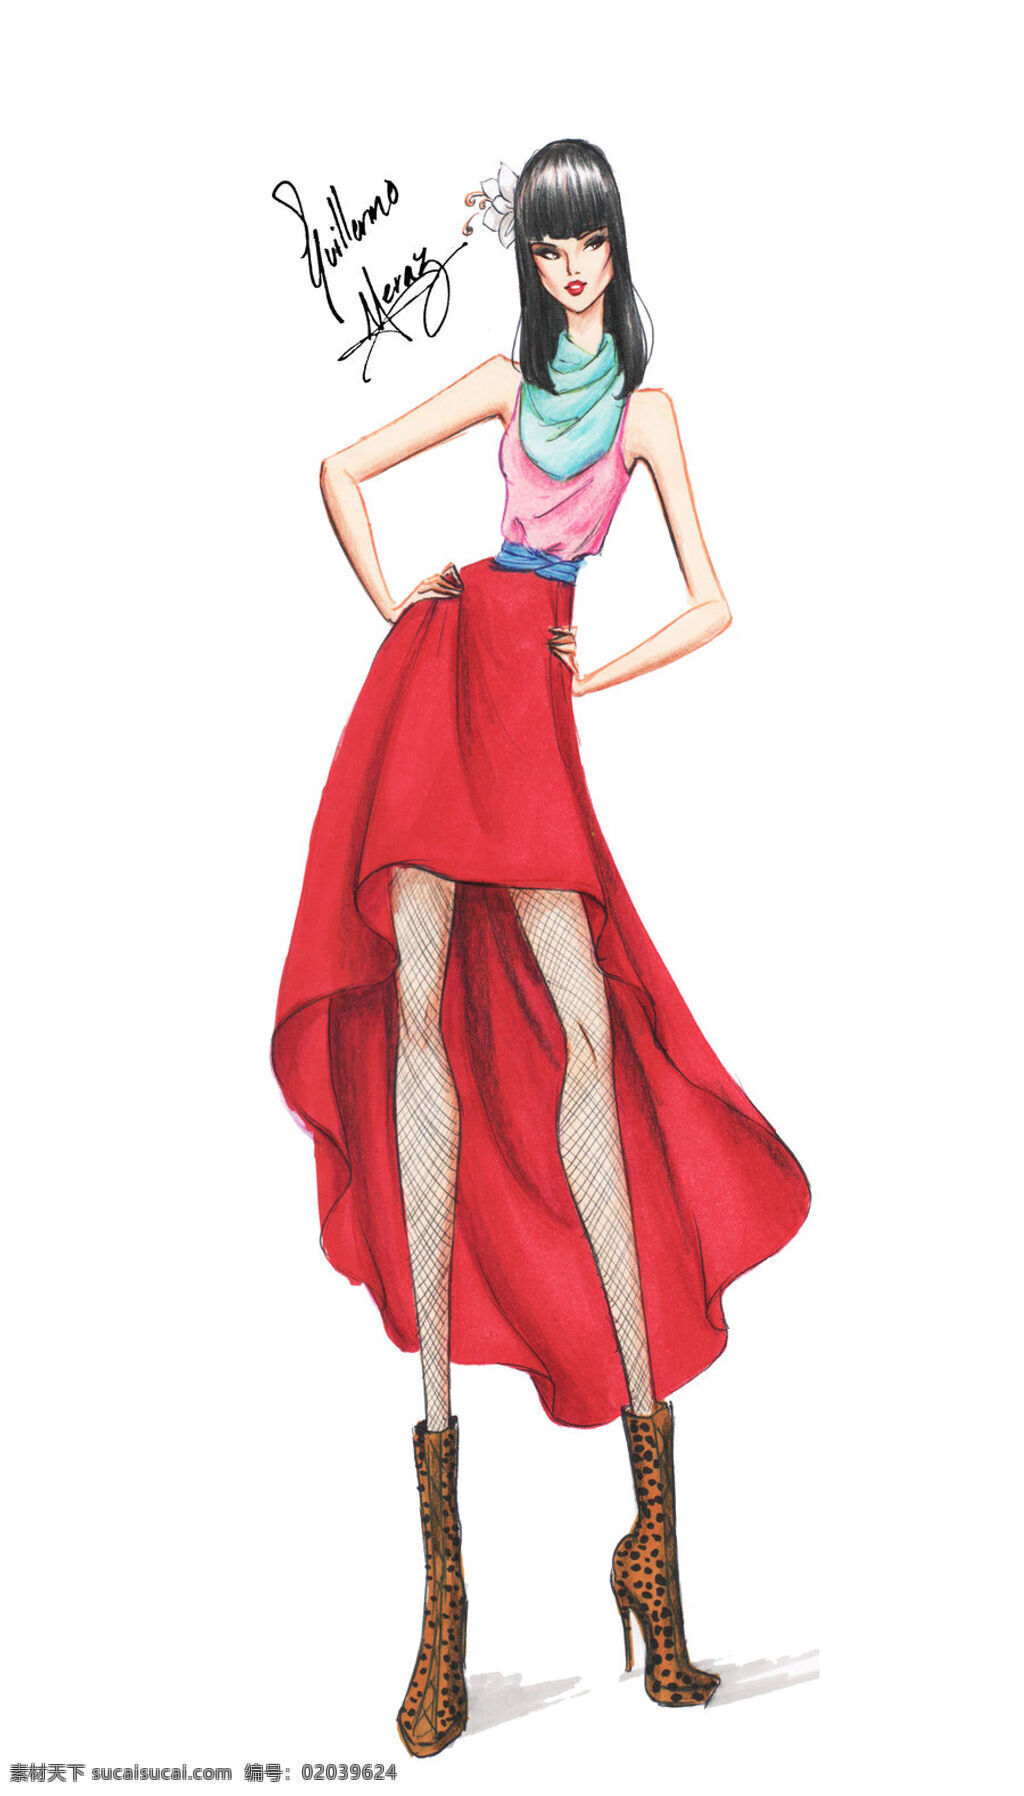 红色 无袖 连衣裙 设计图 服装设计 时尚女装 职业女装 职业装 女装设计 效果图 短裙 衬衫 服装 服装效果图